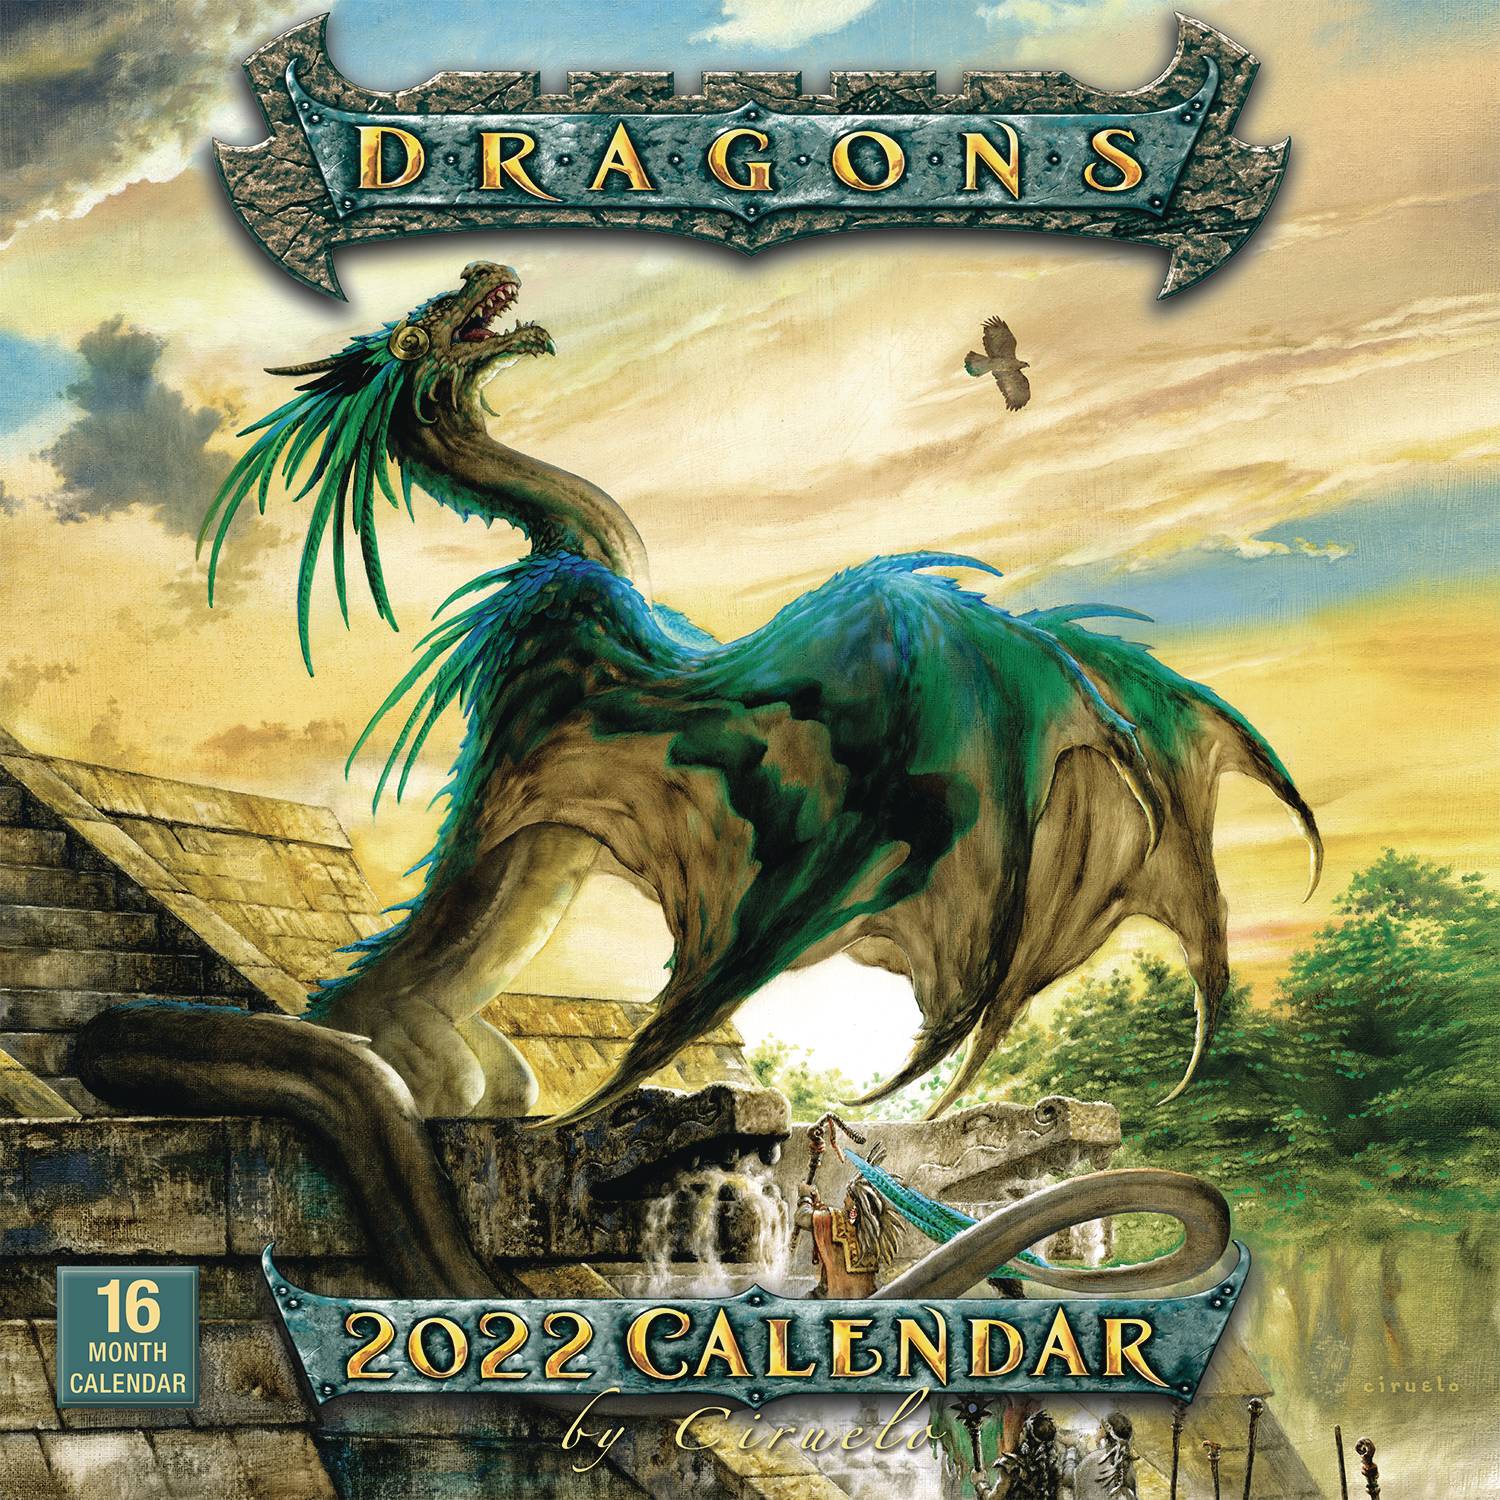 Dragon Calendar 2022 Mar211565 - Dragons By Ciruelo 2022 Wall Calendar - Previews World